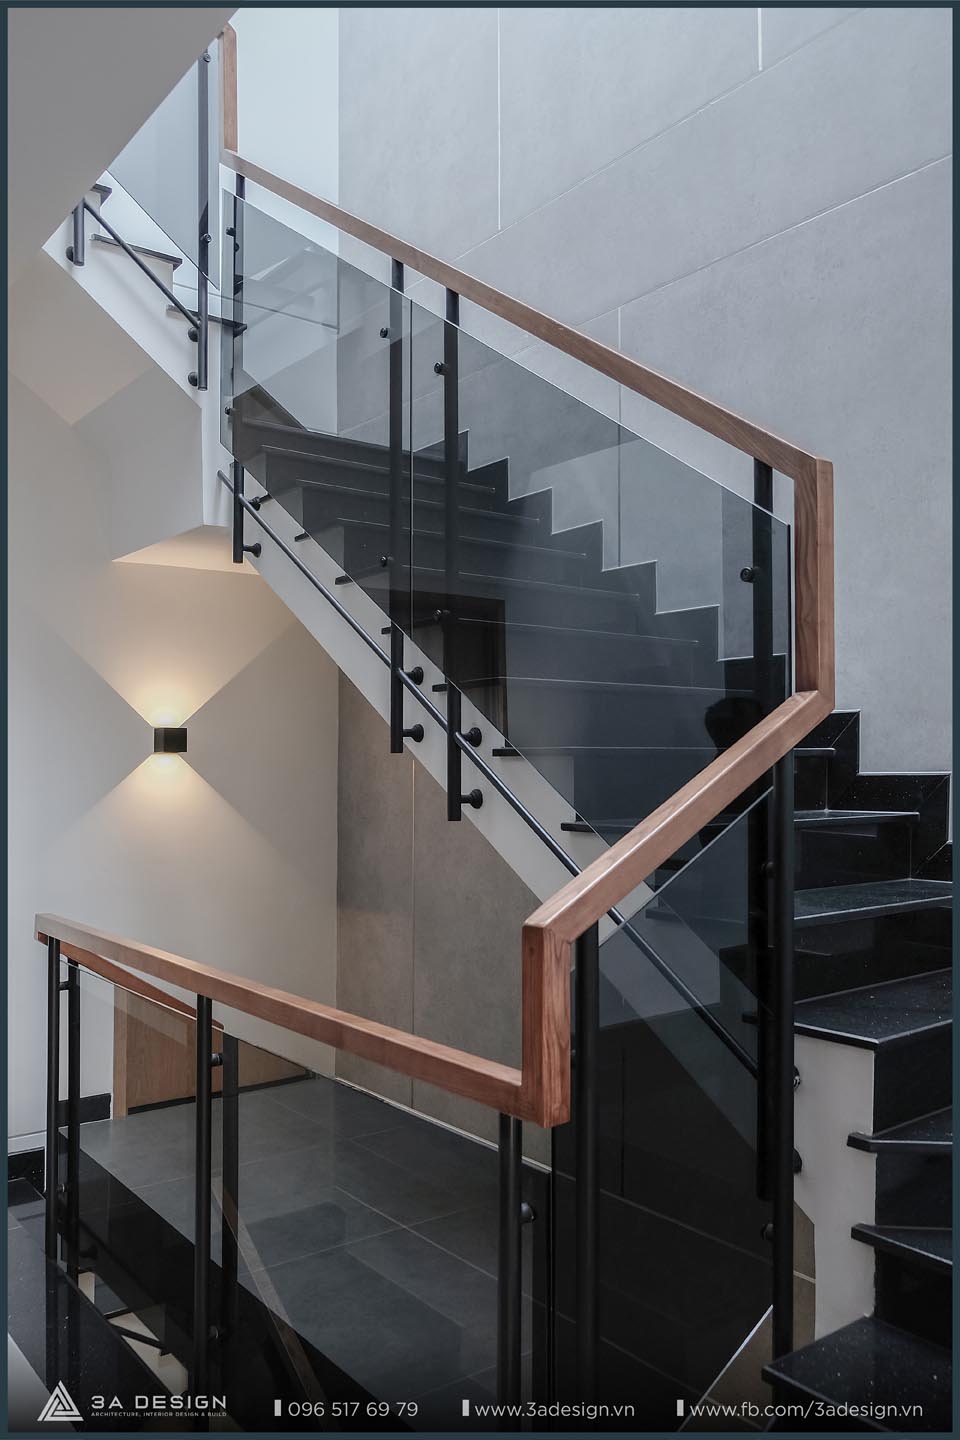 hành lang cầu thang được sử dụng kính trong đen